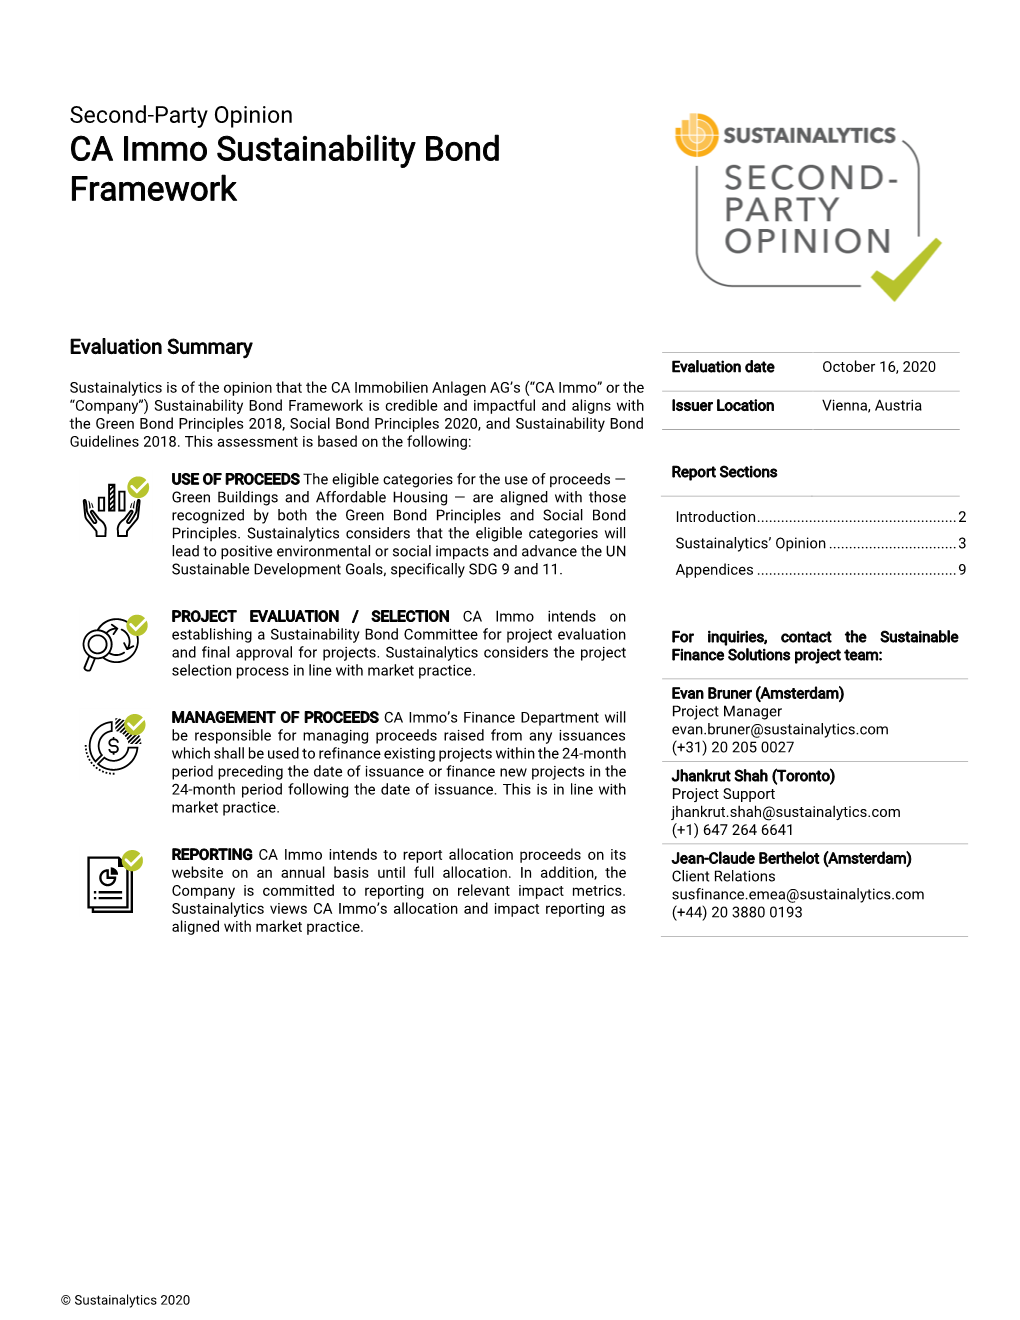 CA Immo Sustainability Bond Framework